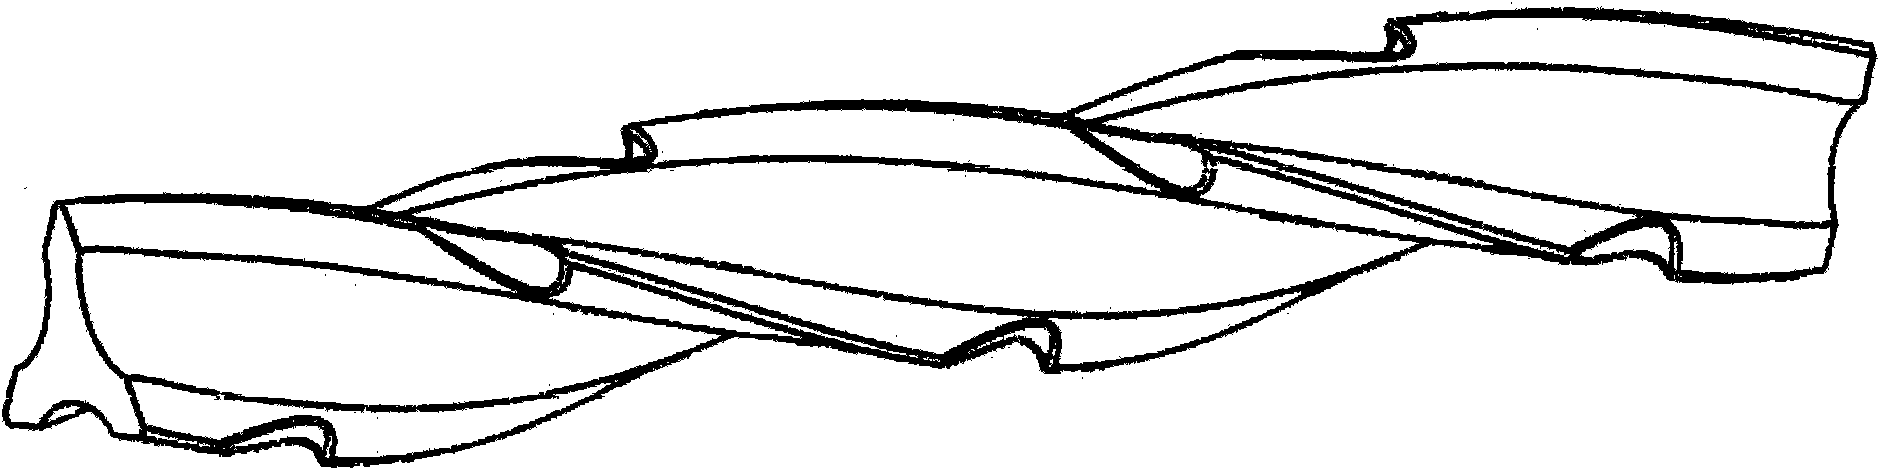 Rifle-shaped felting needle